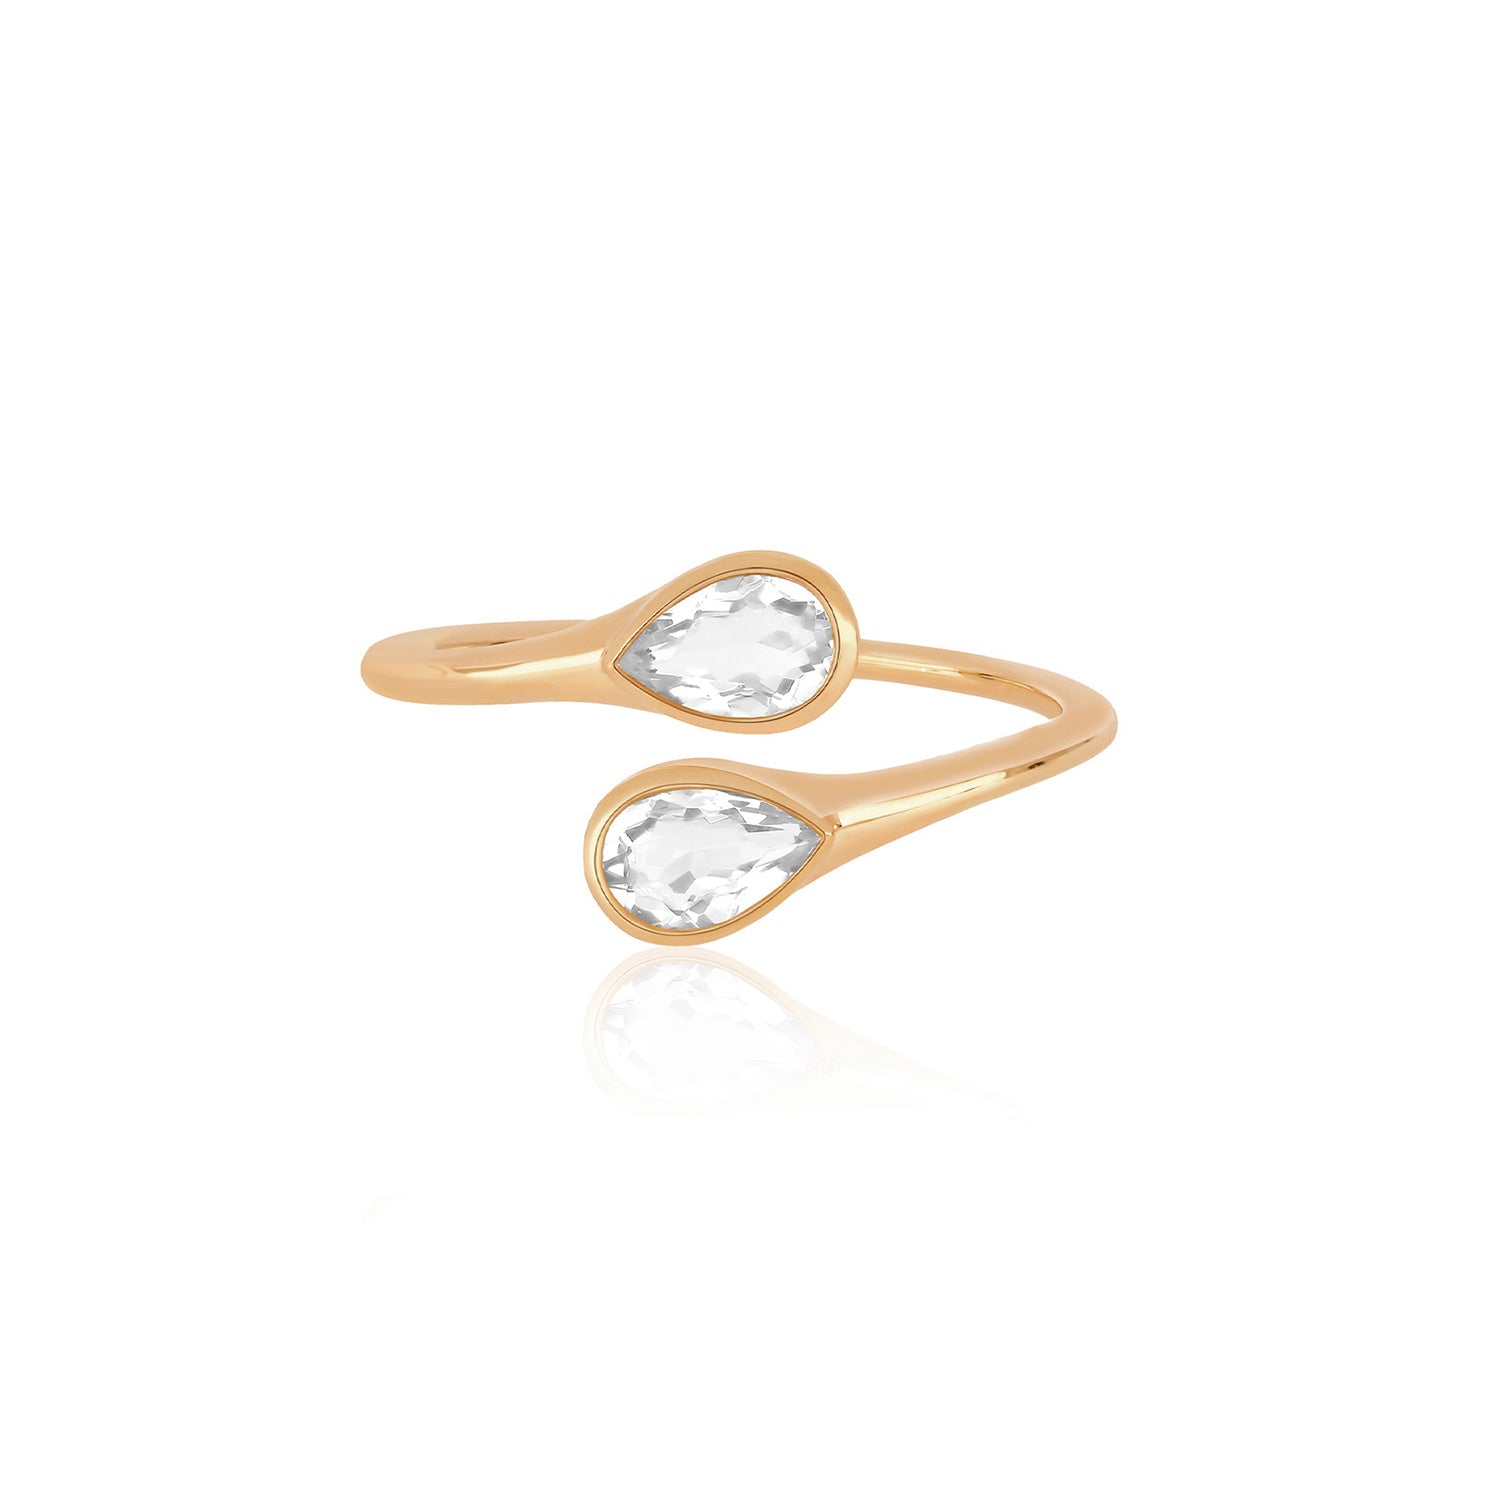 White Quartz Double Pear Ring in 14k rose gold